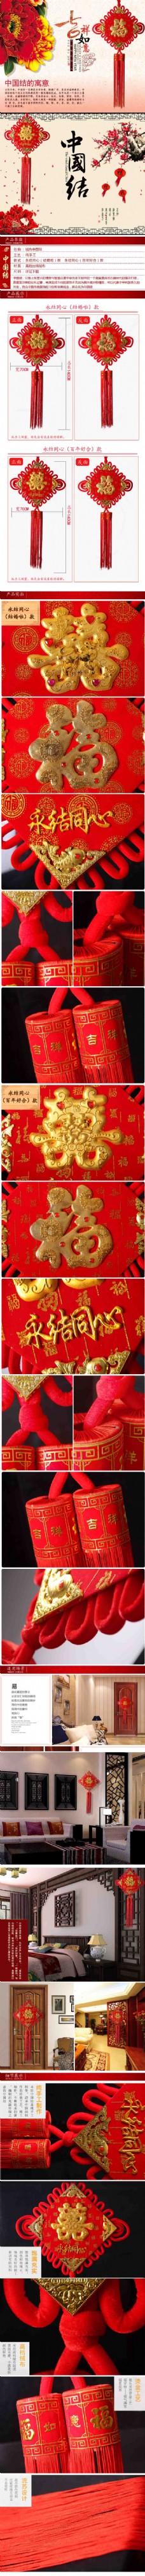 中国情结婚庆中国结详情页设计唯美详情页